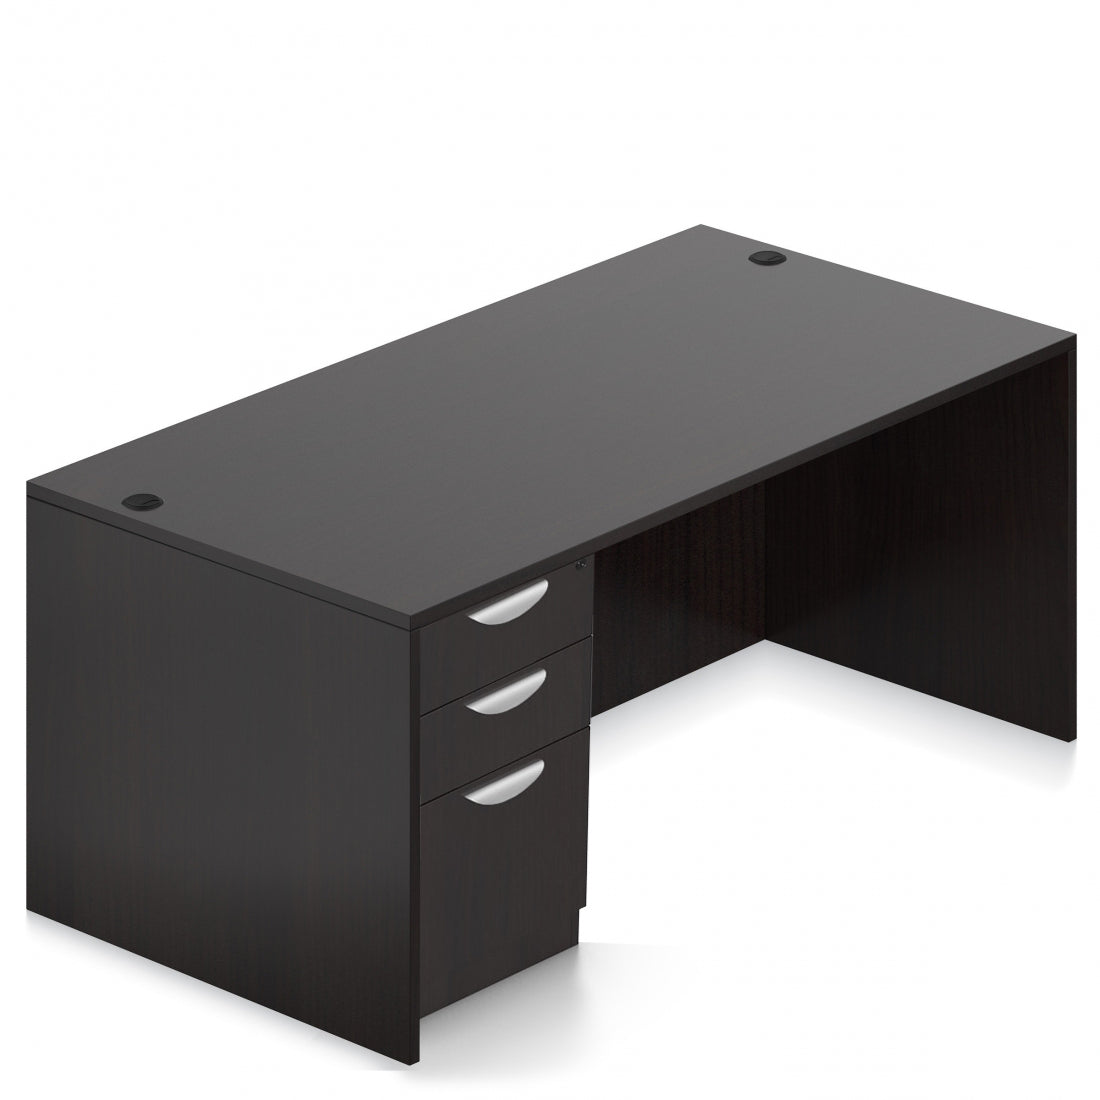 OTG 48"W x 30"D Rectangular Desk - Single Full Pedestal